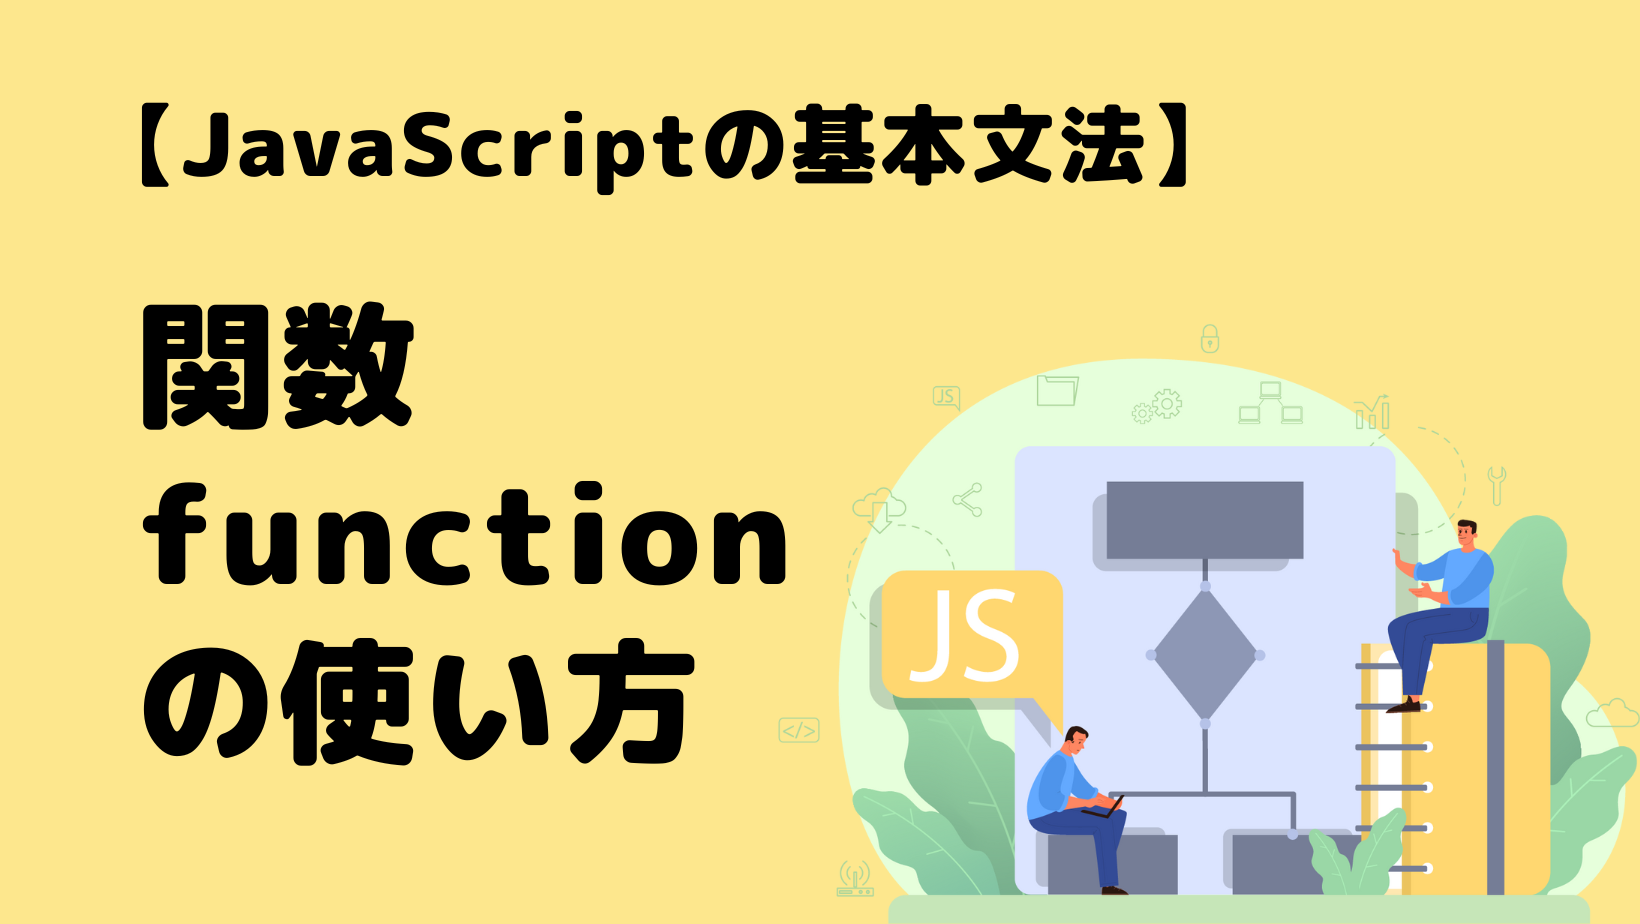 【JavaScript】関数 function の使い方【基本文法】